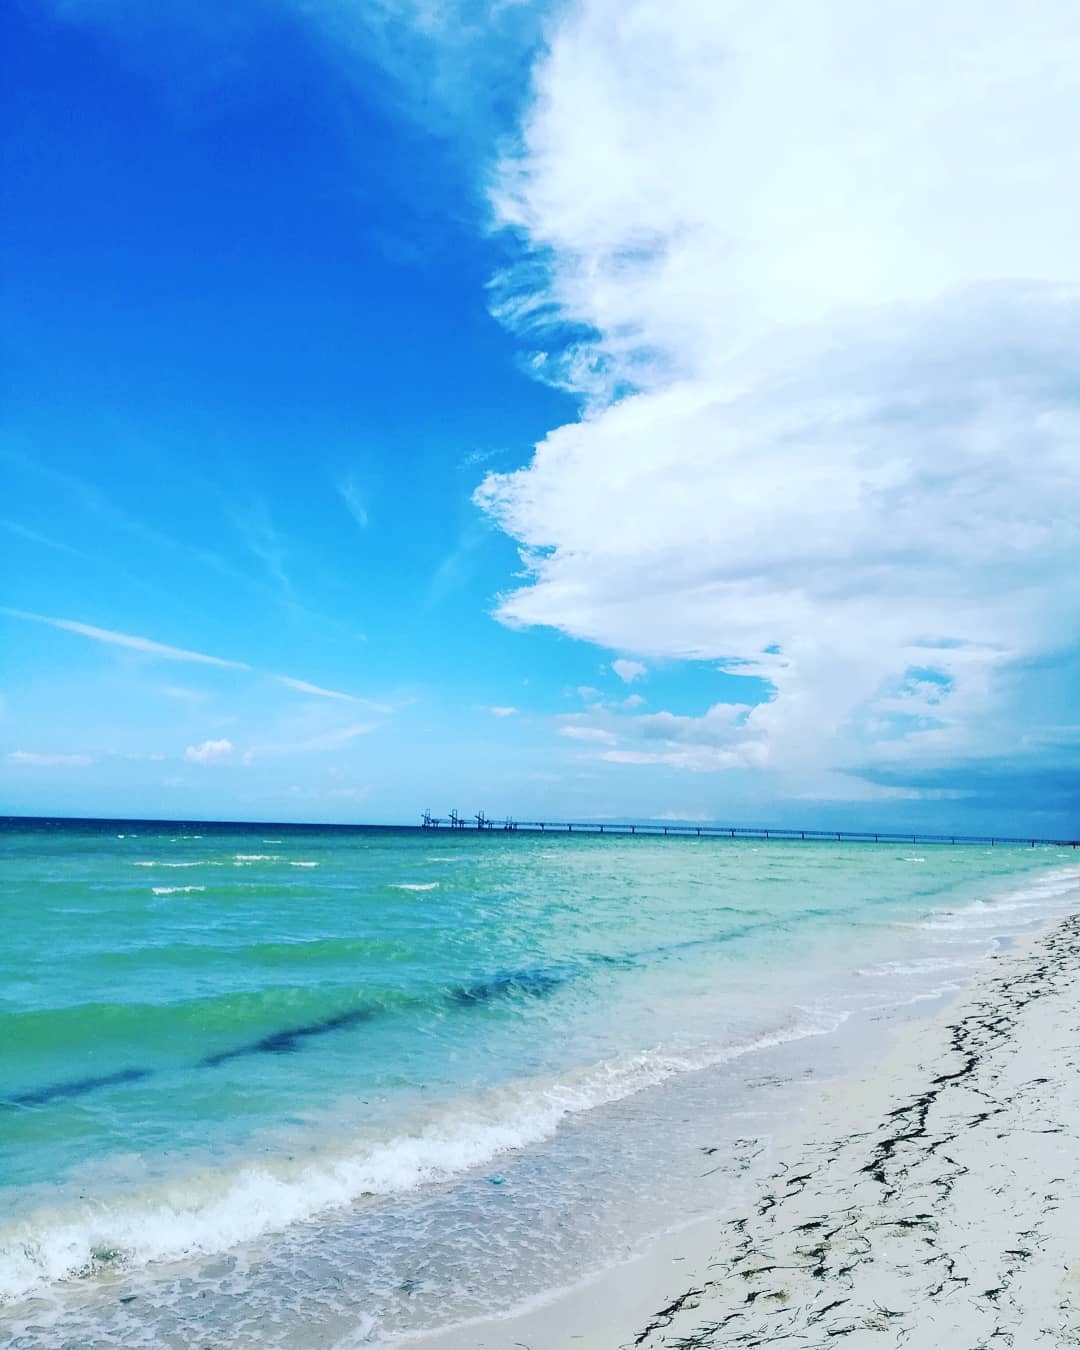 ¿Cómo llegar a Cancunito, la playa virgen de Yucatán?